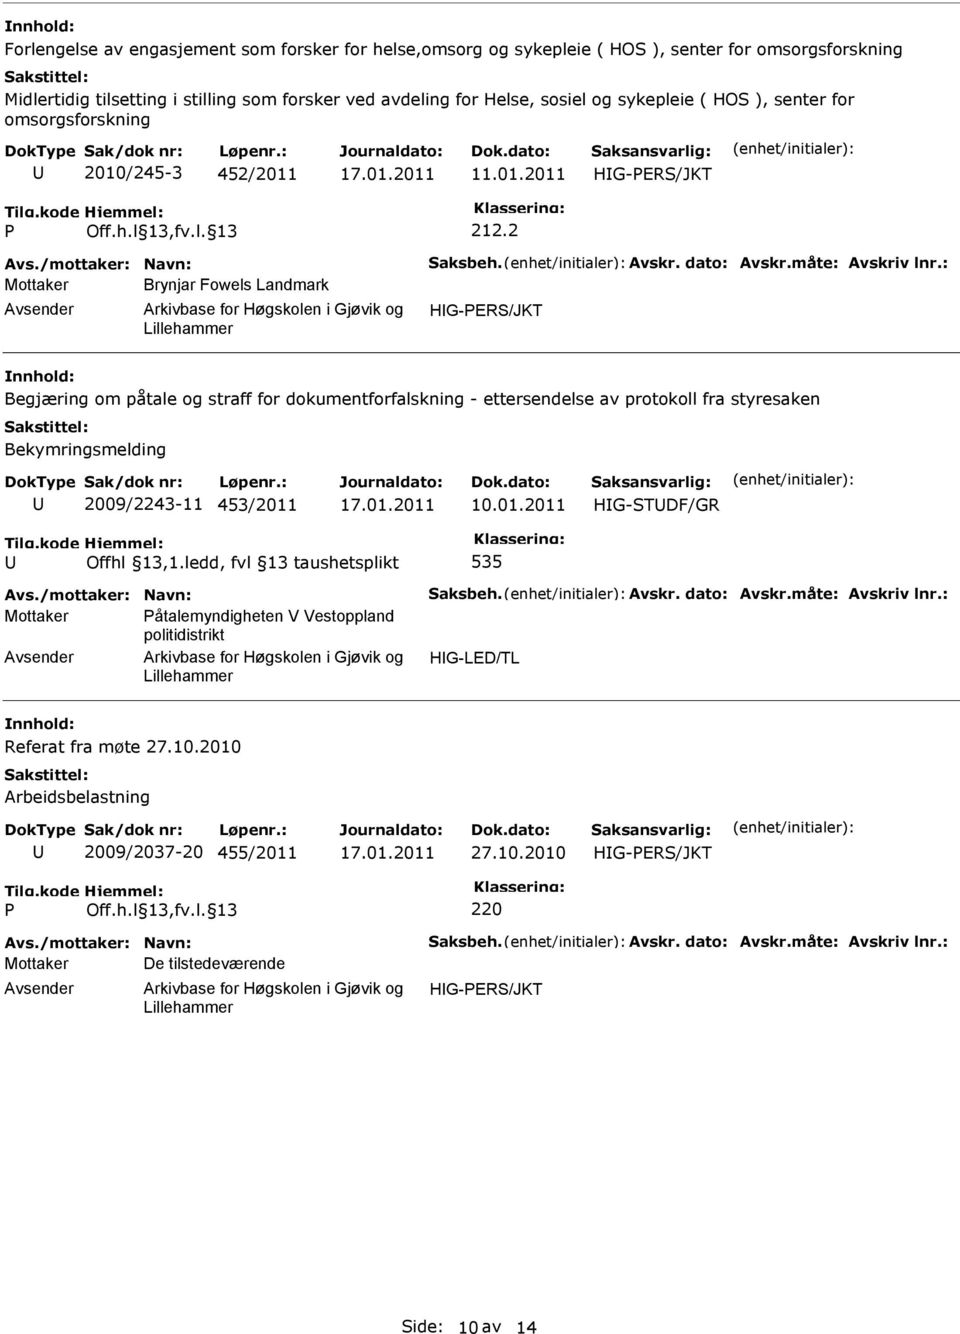 : Mottaker Brynjar Fowels Landmark HG-PER/JKT Begjæring om påtale og straff for dokumentforfalskning - ettersendelse av protokoll fra styresaken Bekymringsmelding 2009/2243-11 453/2011 10.01.2011 Offhl 13,1.